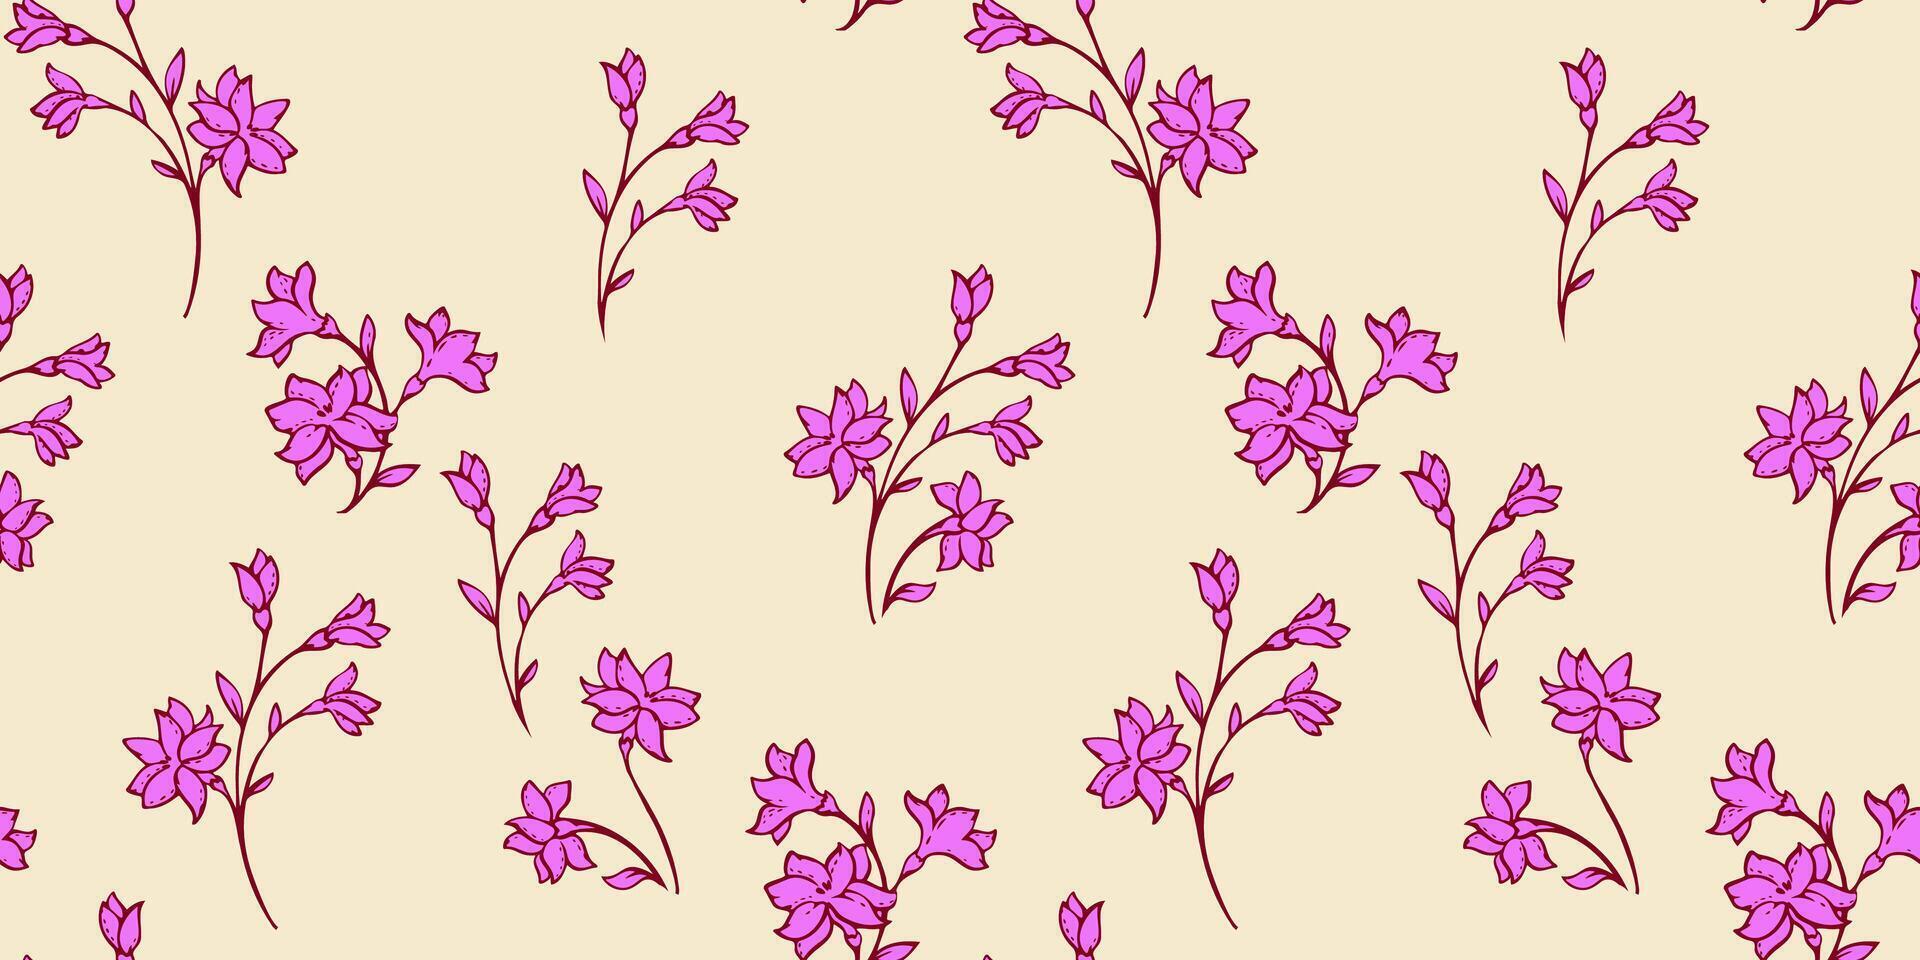 modelo amable, minimalista ramas flores con brotes dispersado al azar vector mano dibujado. resumen brillante púrpura minúsculo floral tallos en el amarillo antecedentes. verano sencillo botánico impresión.